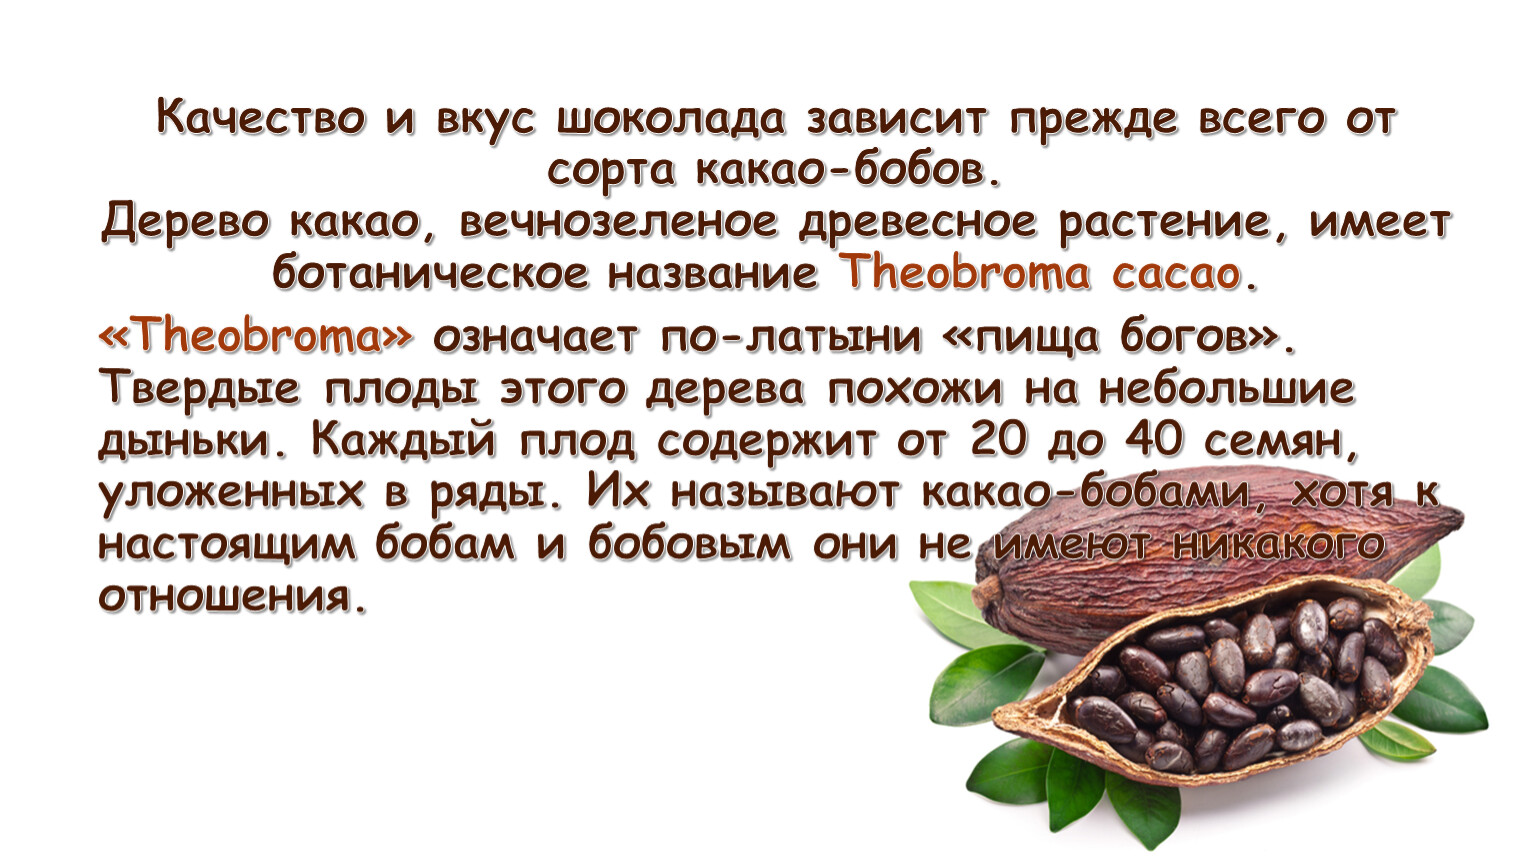 Какао - описание, состав, калорийность и пищевая ценность - patee. рецепты